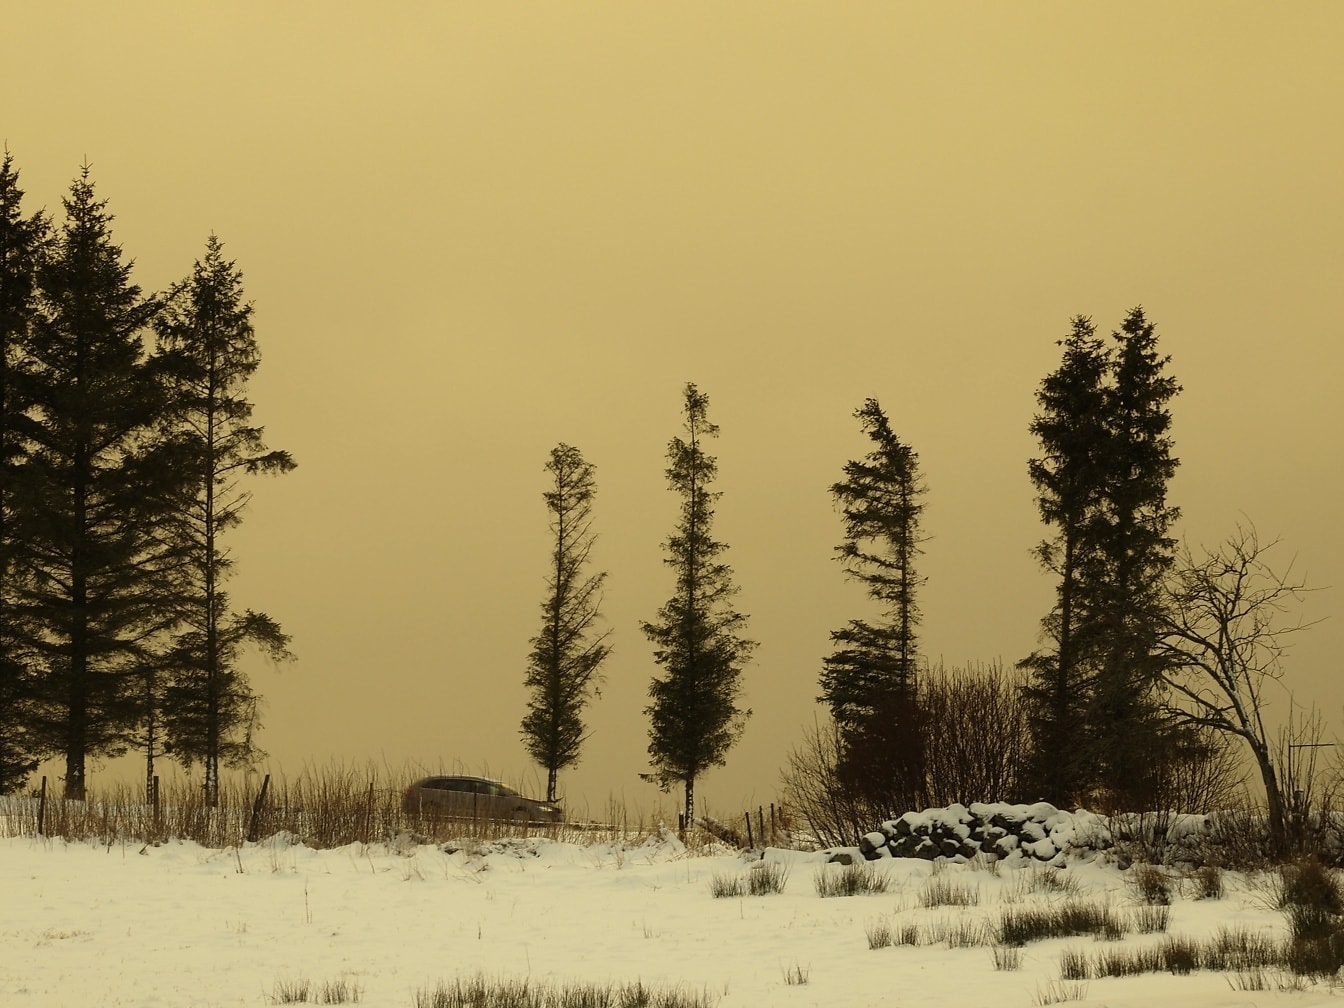 黄昏时分天空淡黄色的雪原，远处挪威的道路上有一辆汽车